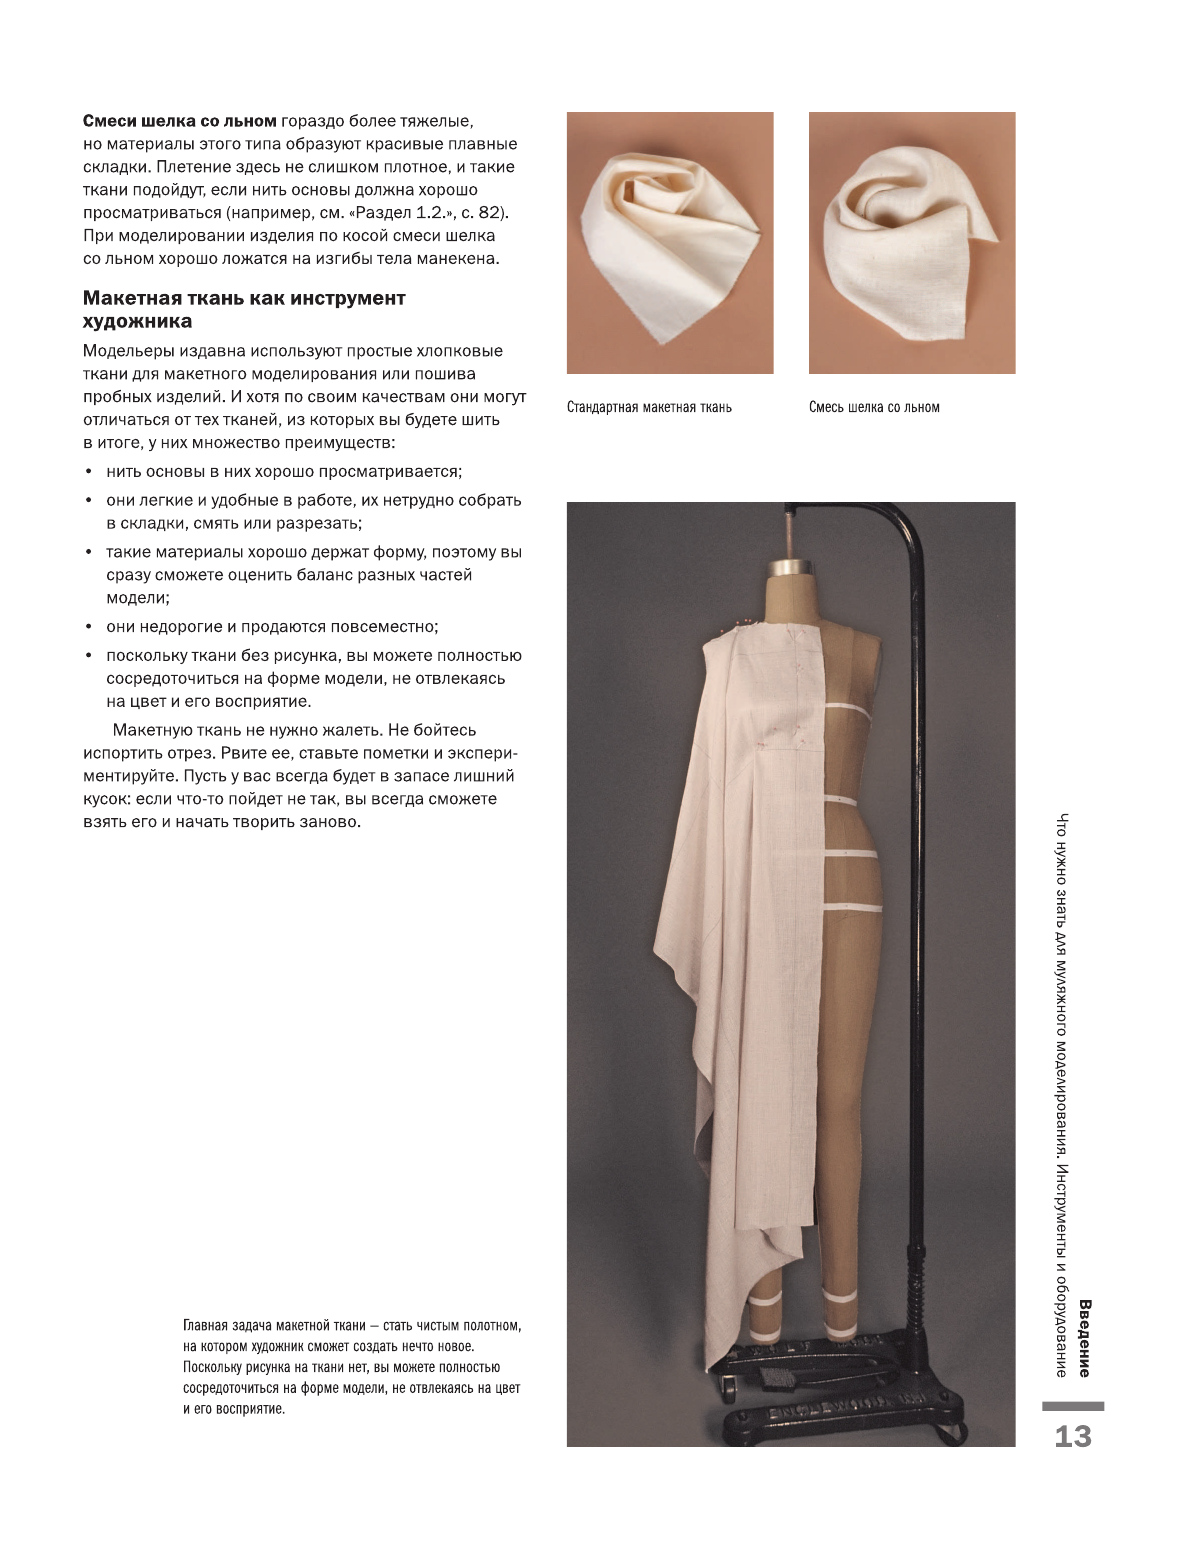 Моделирование одежды: полный иллюстрированный курс. Второе издание - фото №13